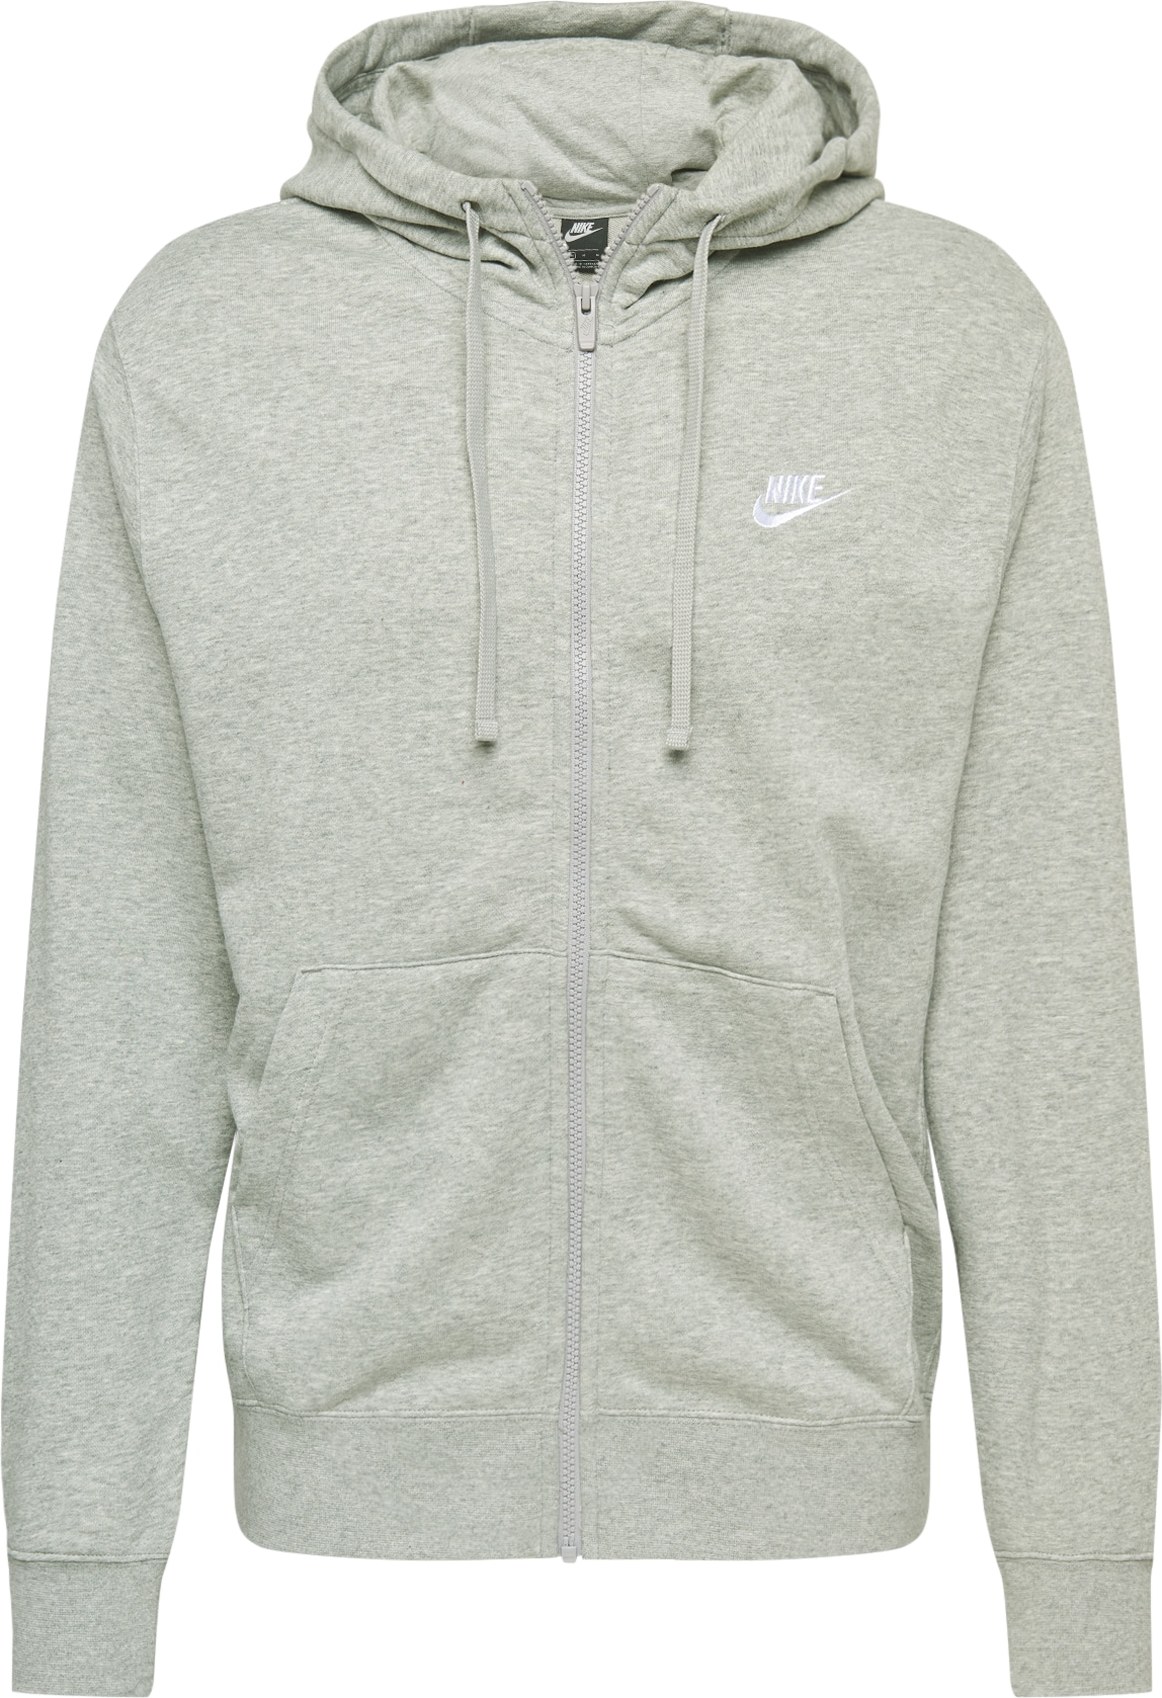 Nike Sportswear Mikina s kapucí šedá